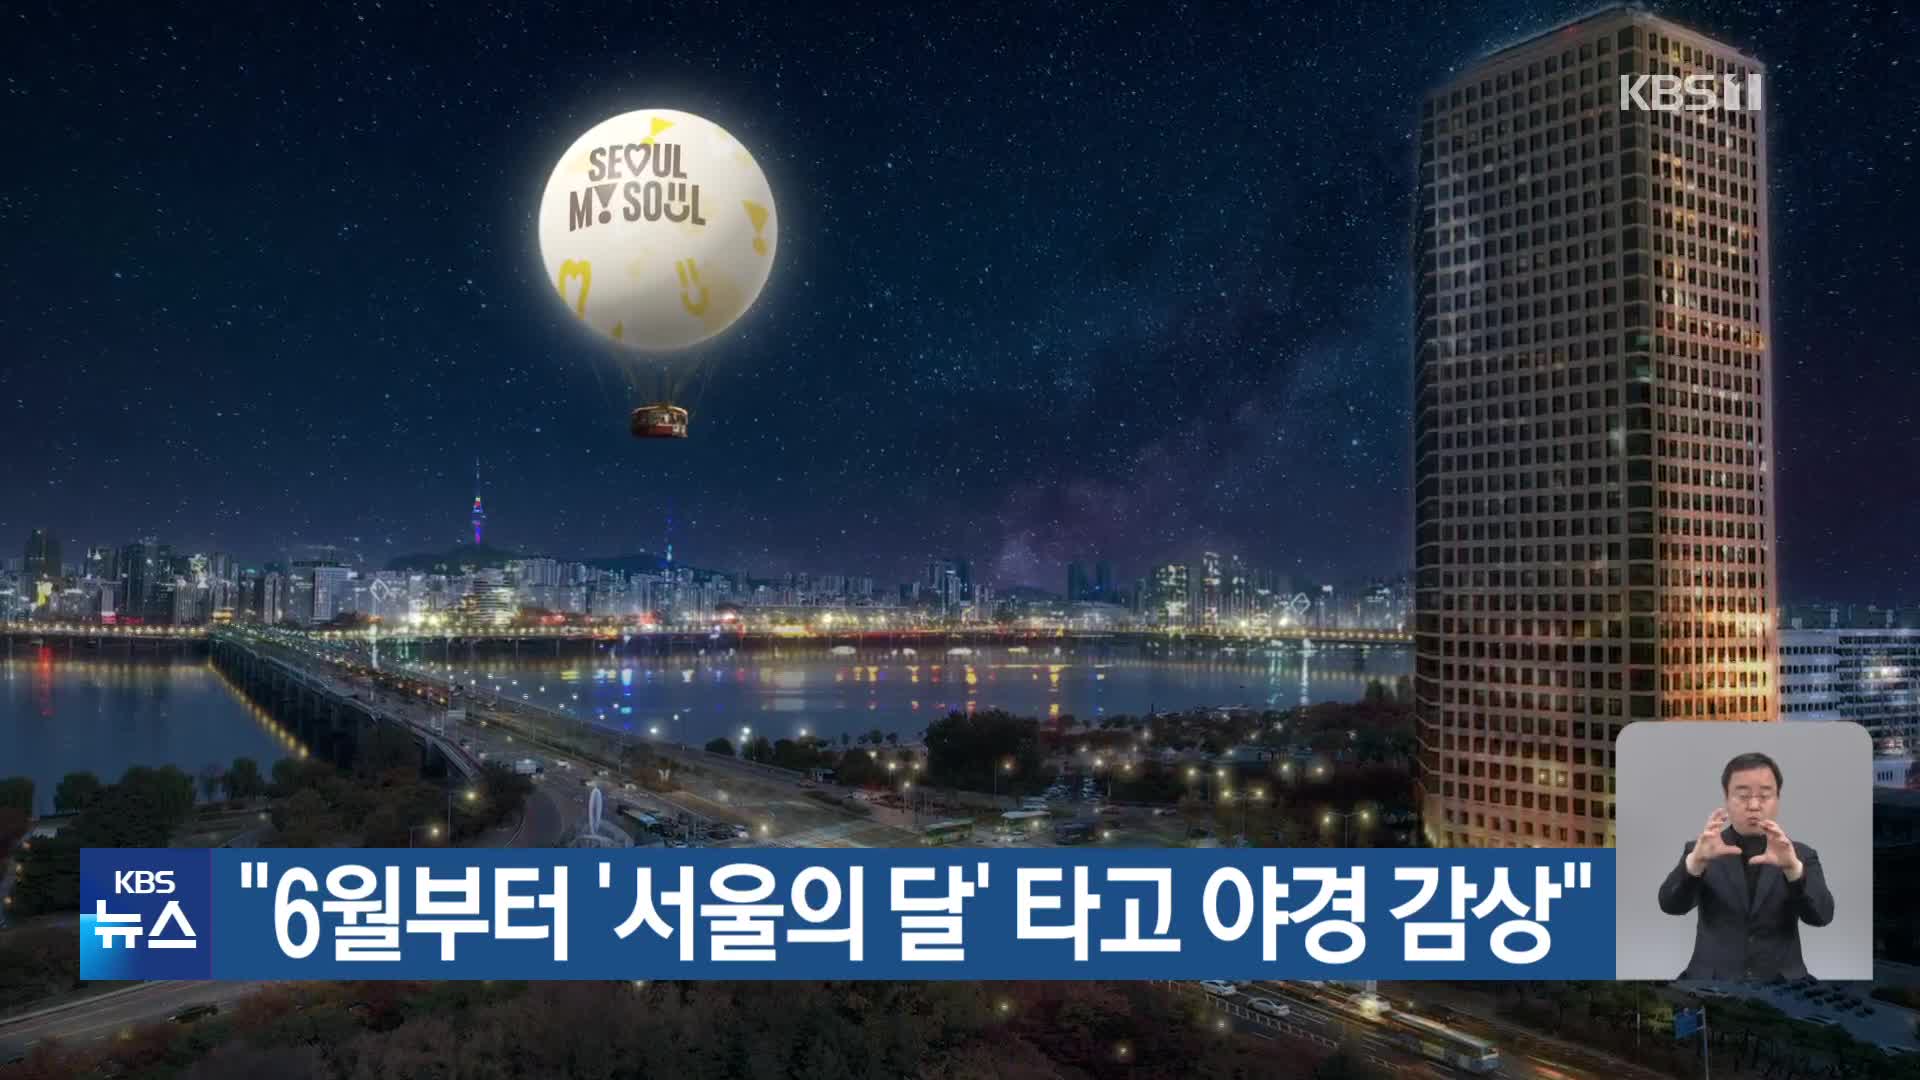 “6월부터 ‘서울의 달’ 타고 야경 감상”